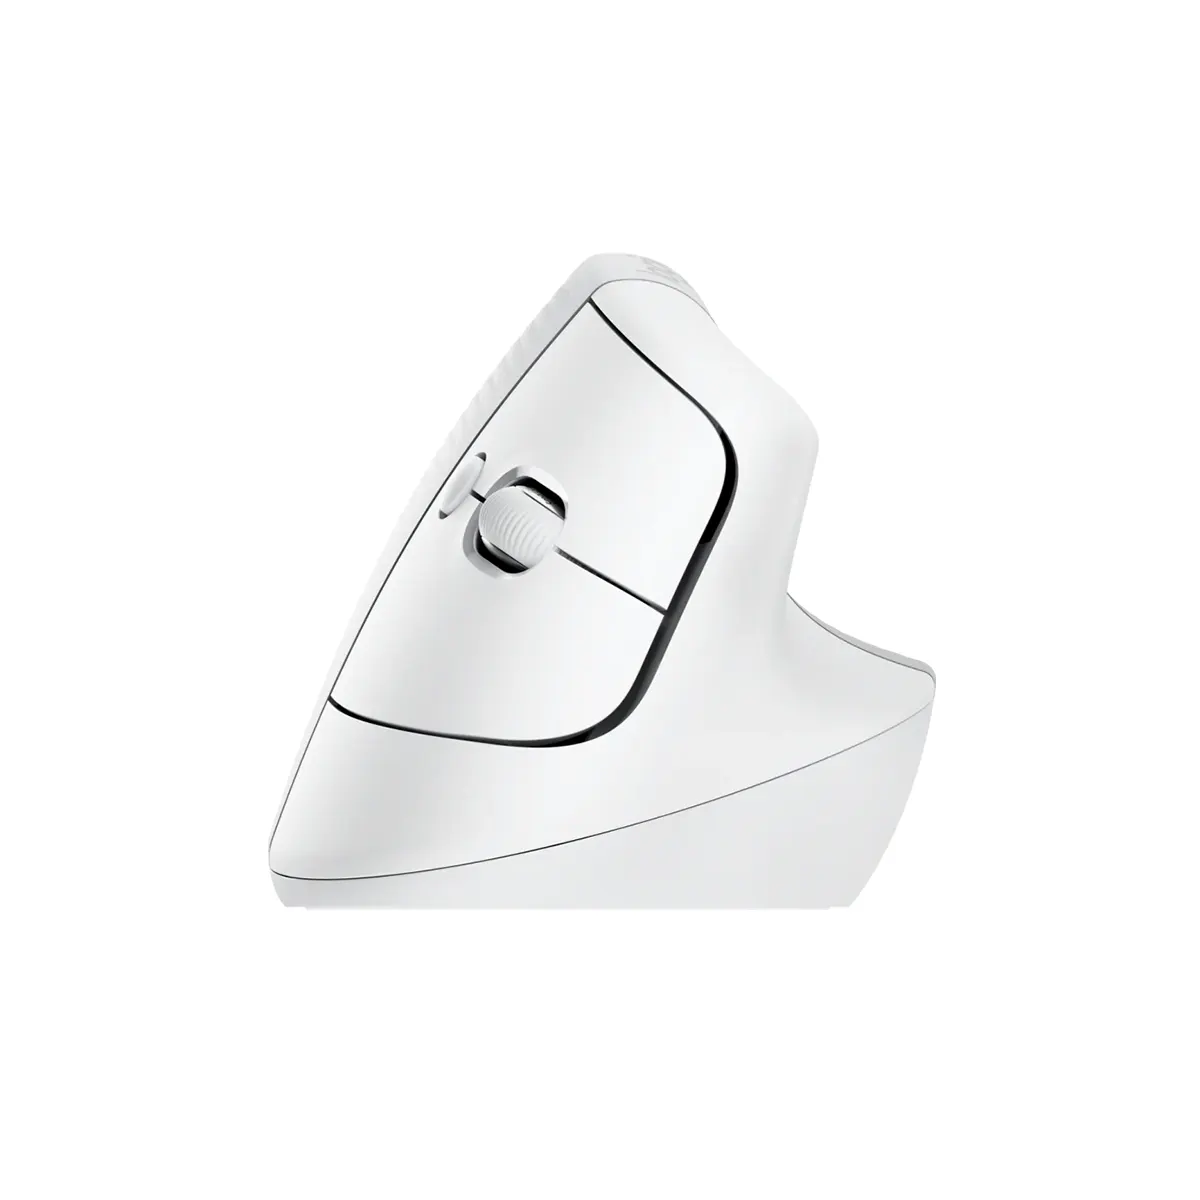 موس عمودی بی سیم لاجیتک مدل Logitech Lift Vertical Ergonomic Wireless Mouse رنگ سفید (3)